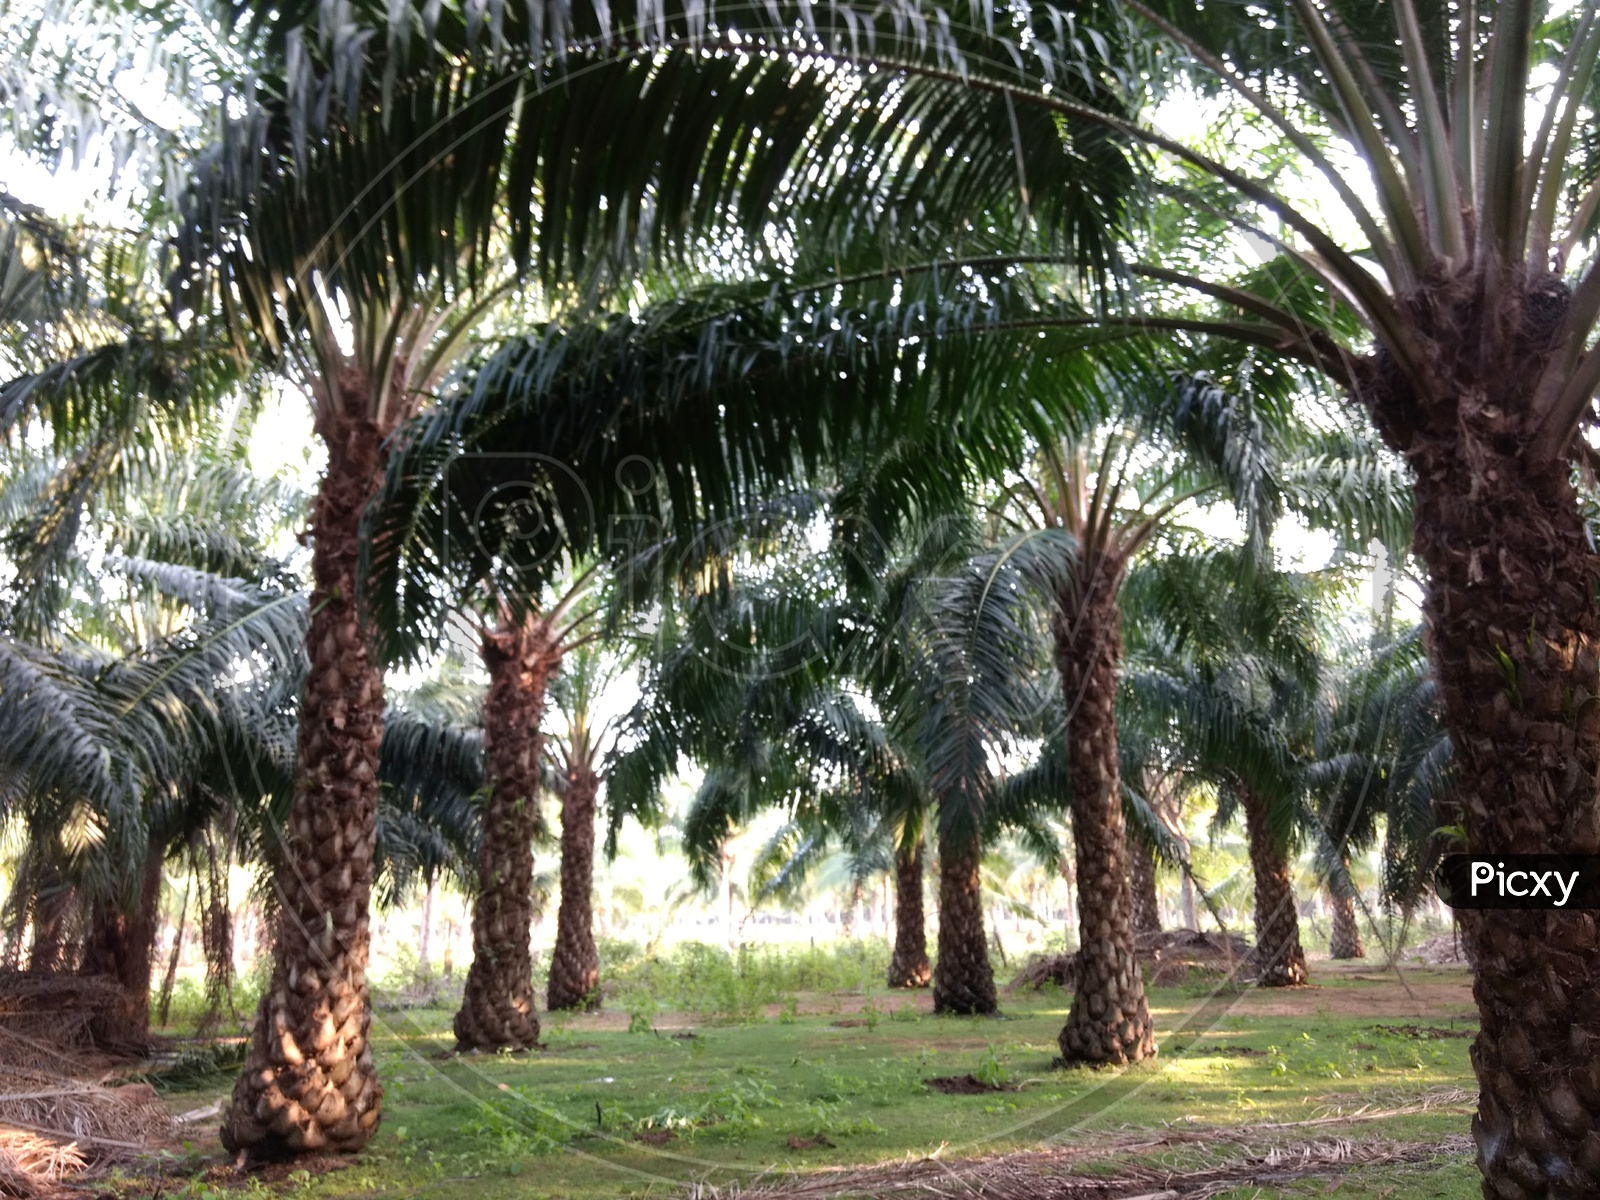 Palm oil fields